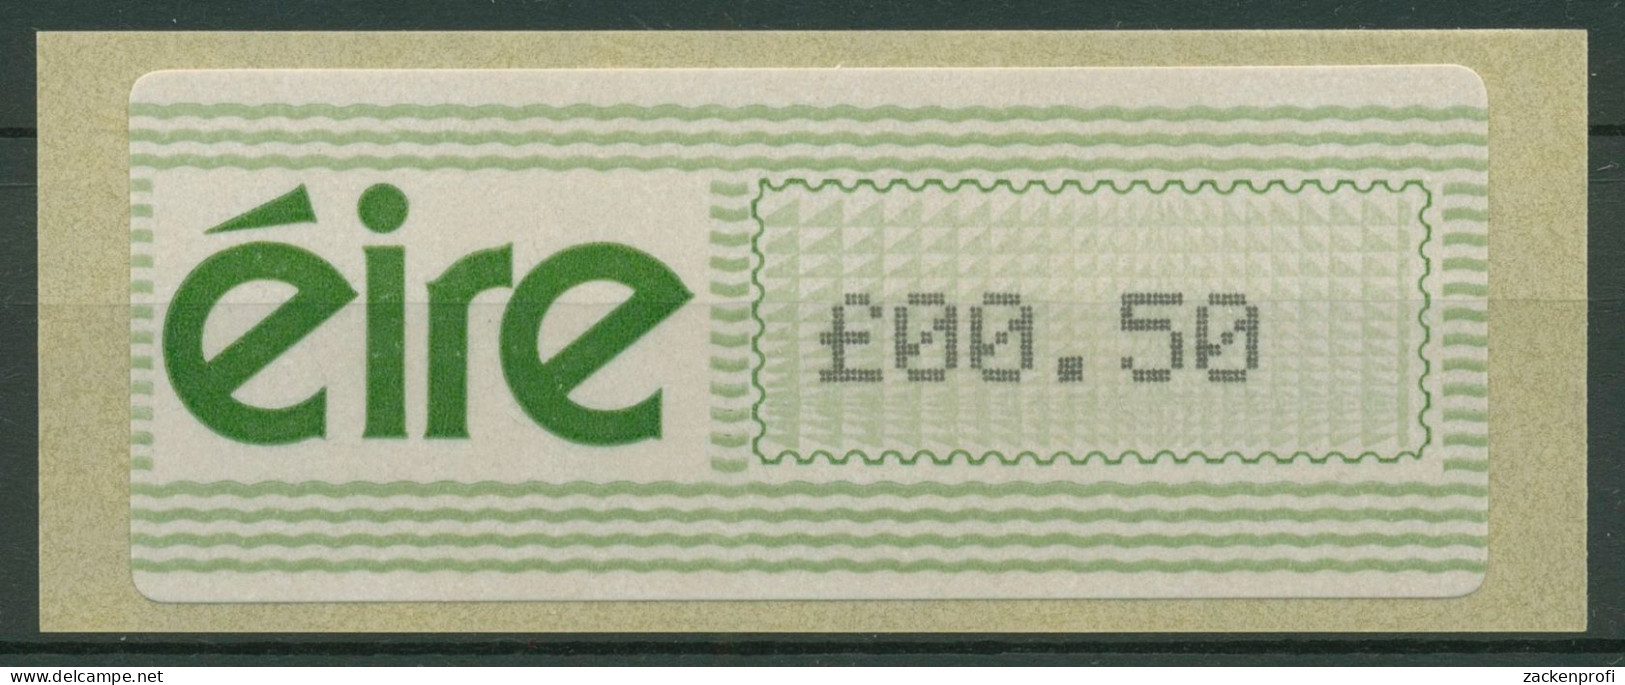 Irland Automatenmarken 1990 Freimarke Einzelwert ATM 3 Postfrisch - Frankeervignetten (Frama)